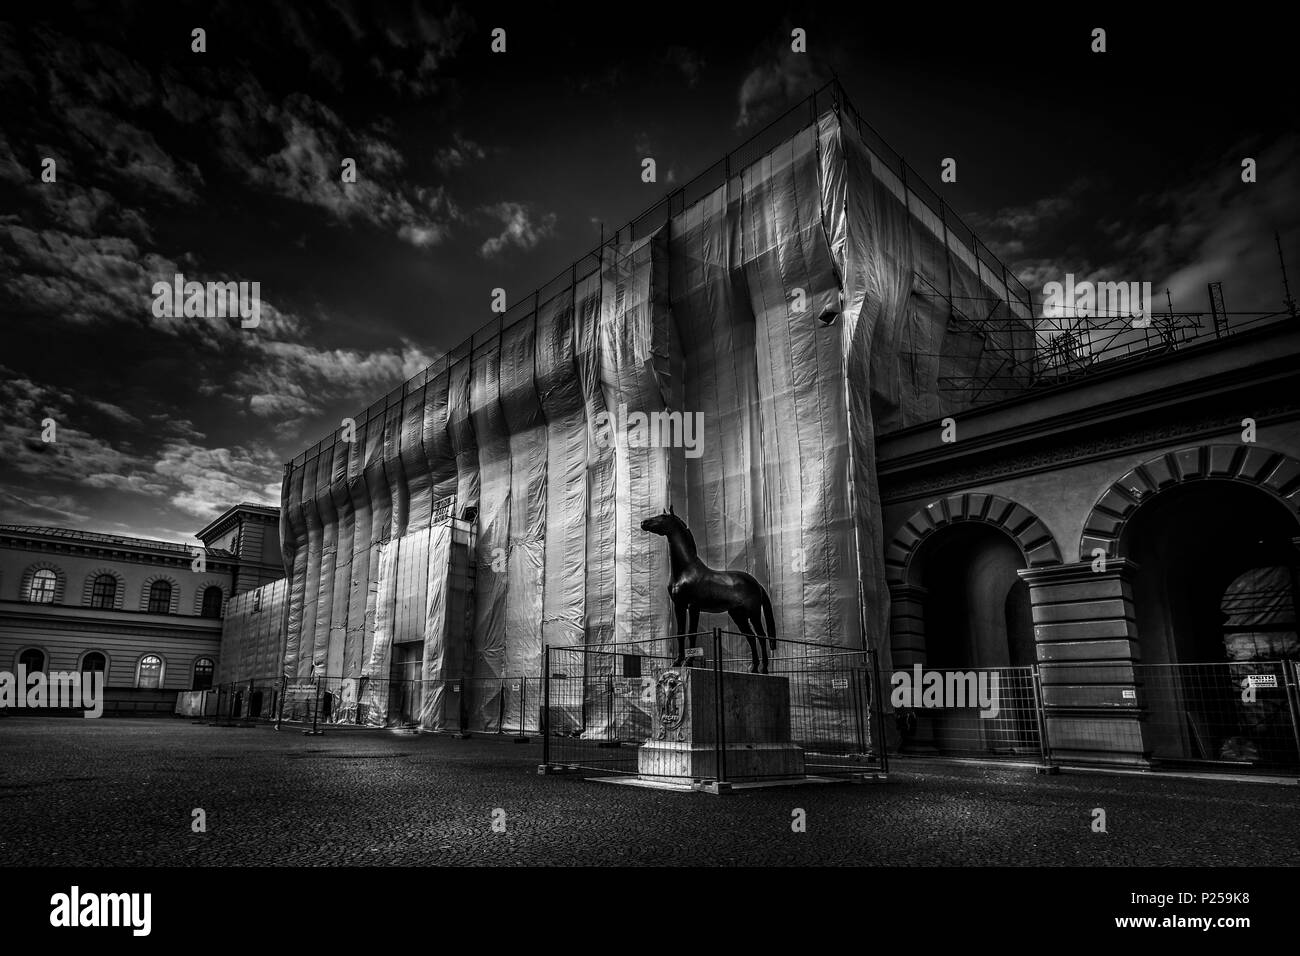 Monaco di Baviera, Staatsarchiv, impalcatura, coperte, atmosfera serale, s/w Foto Stock